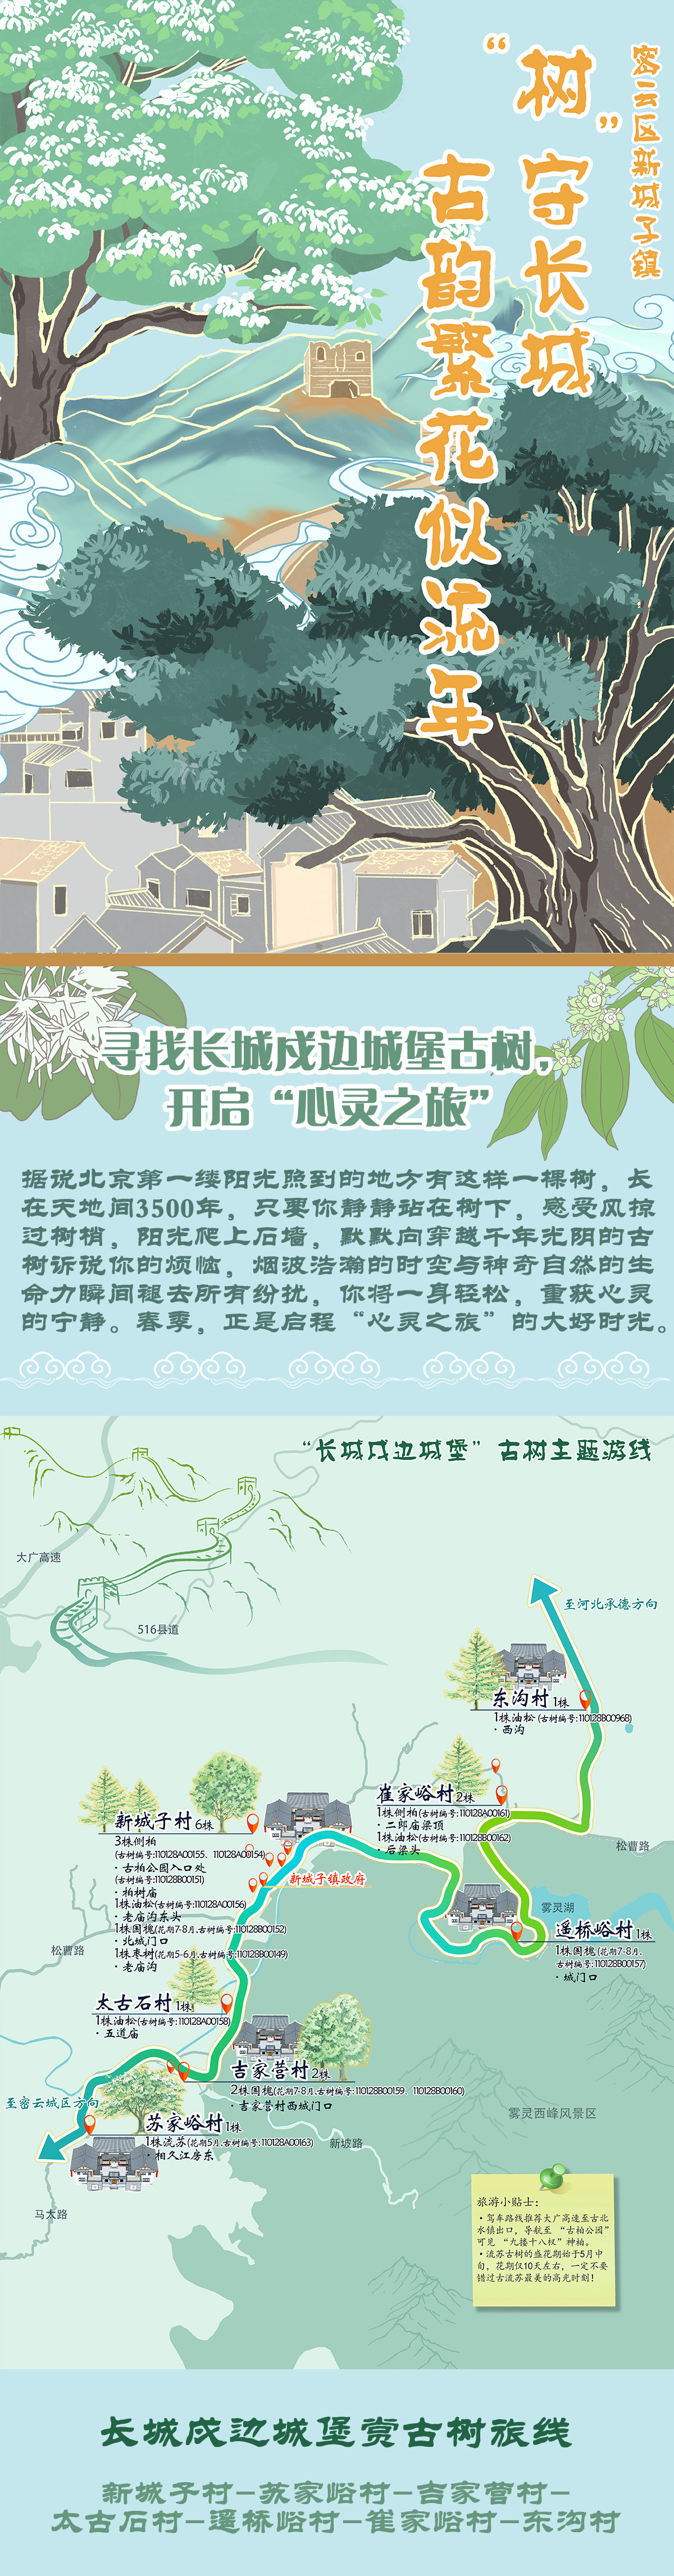 北京发布4条春季古树主题游览路线